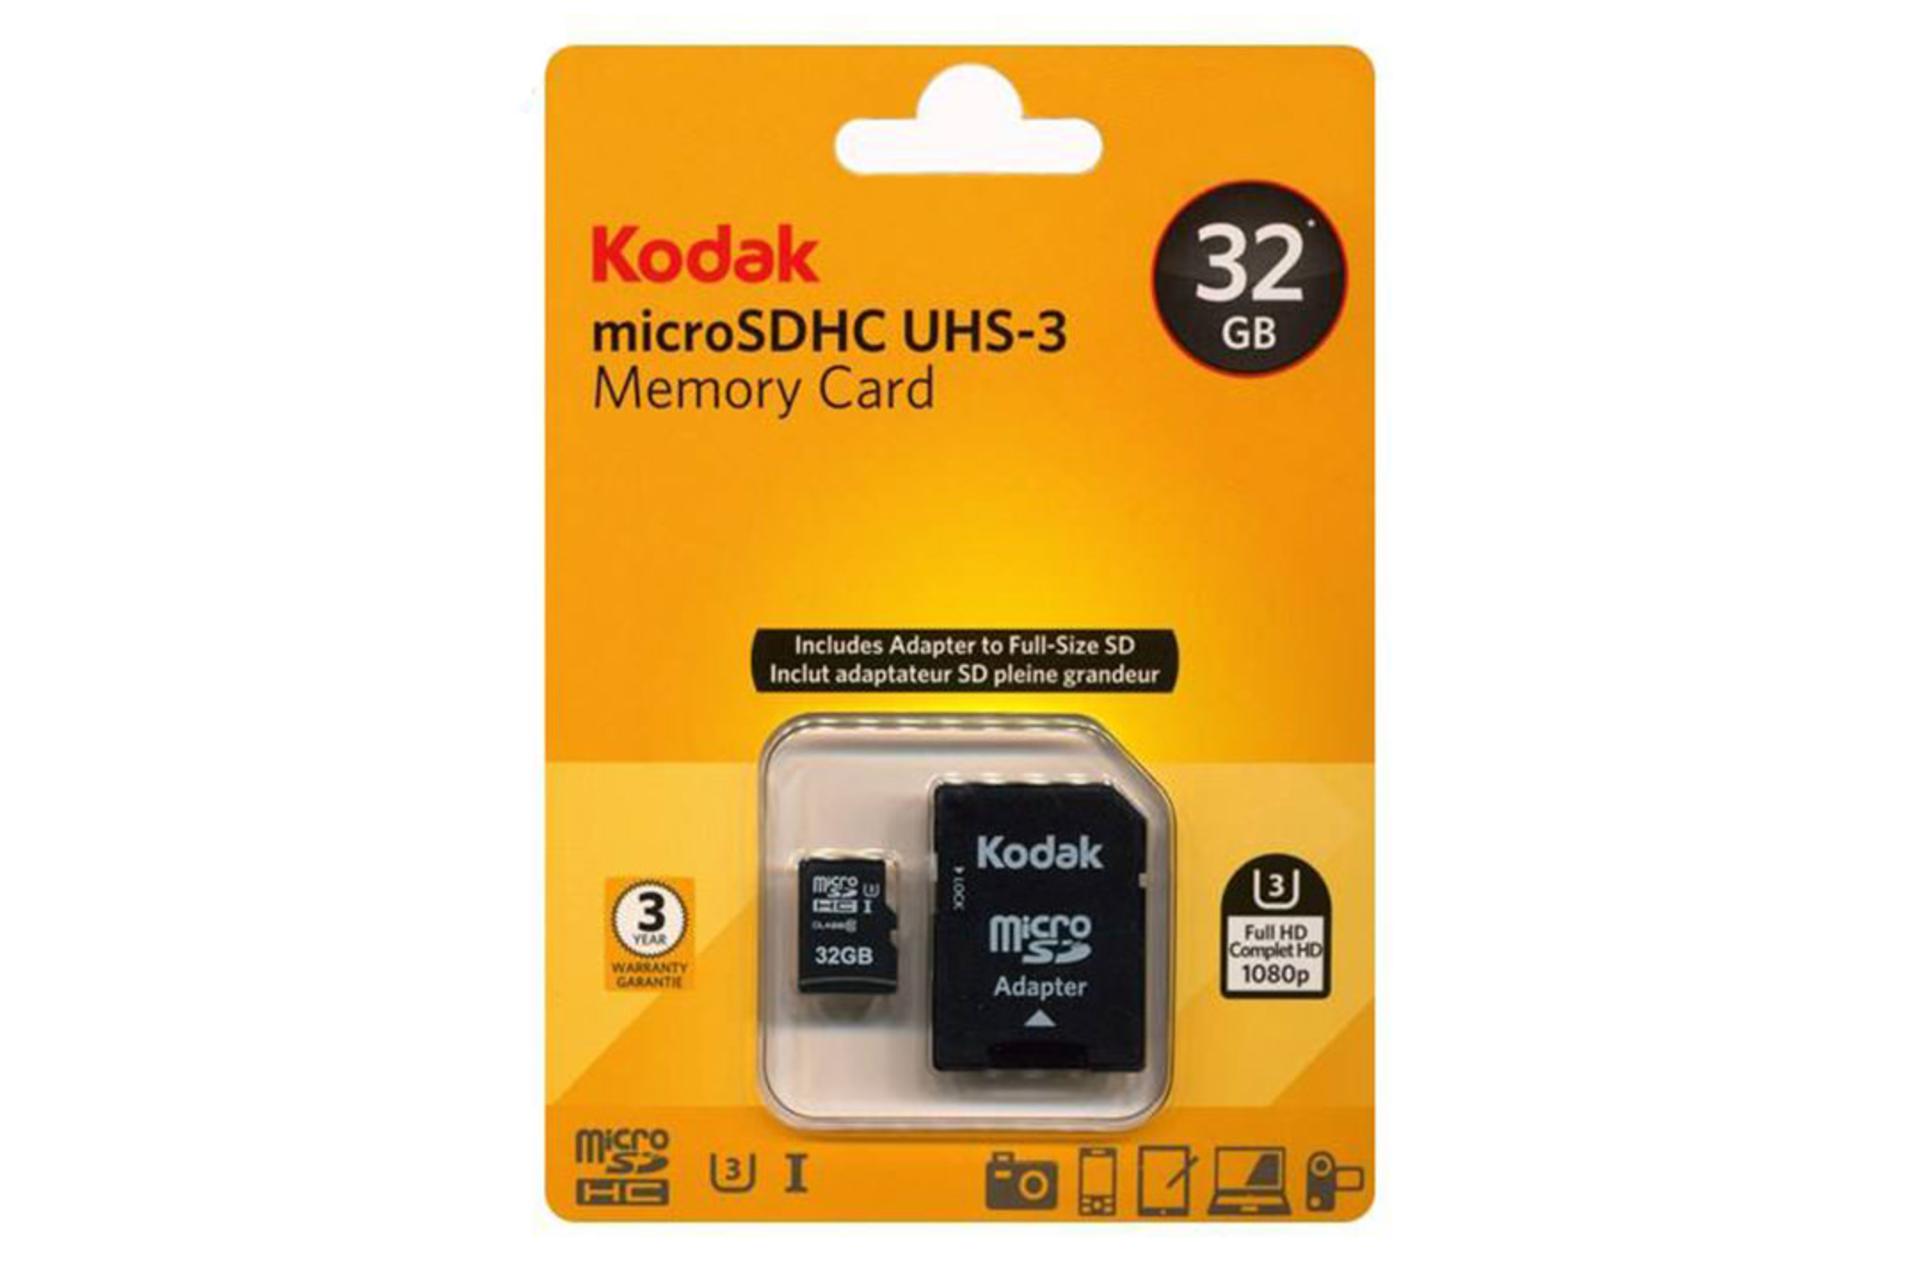 Kodak microSDHC Class 10 UHS-I U3 32GB